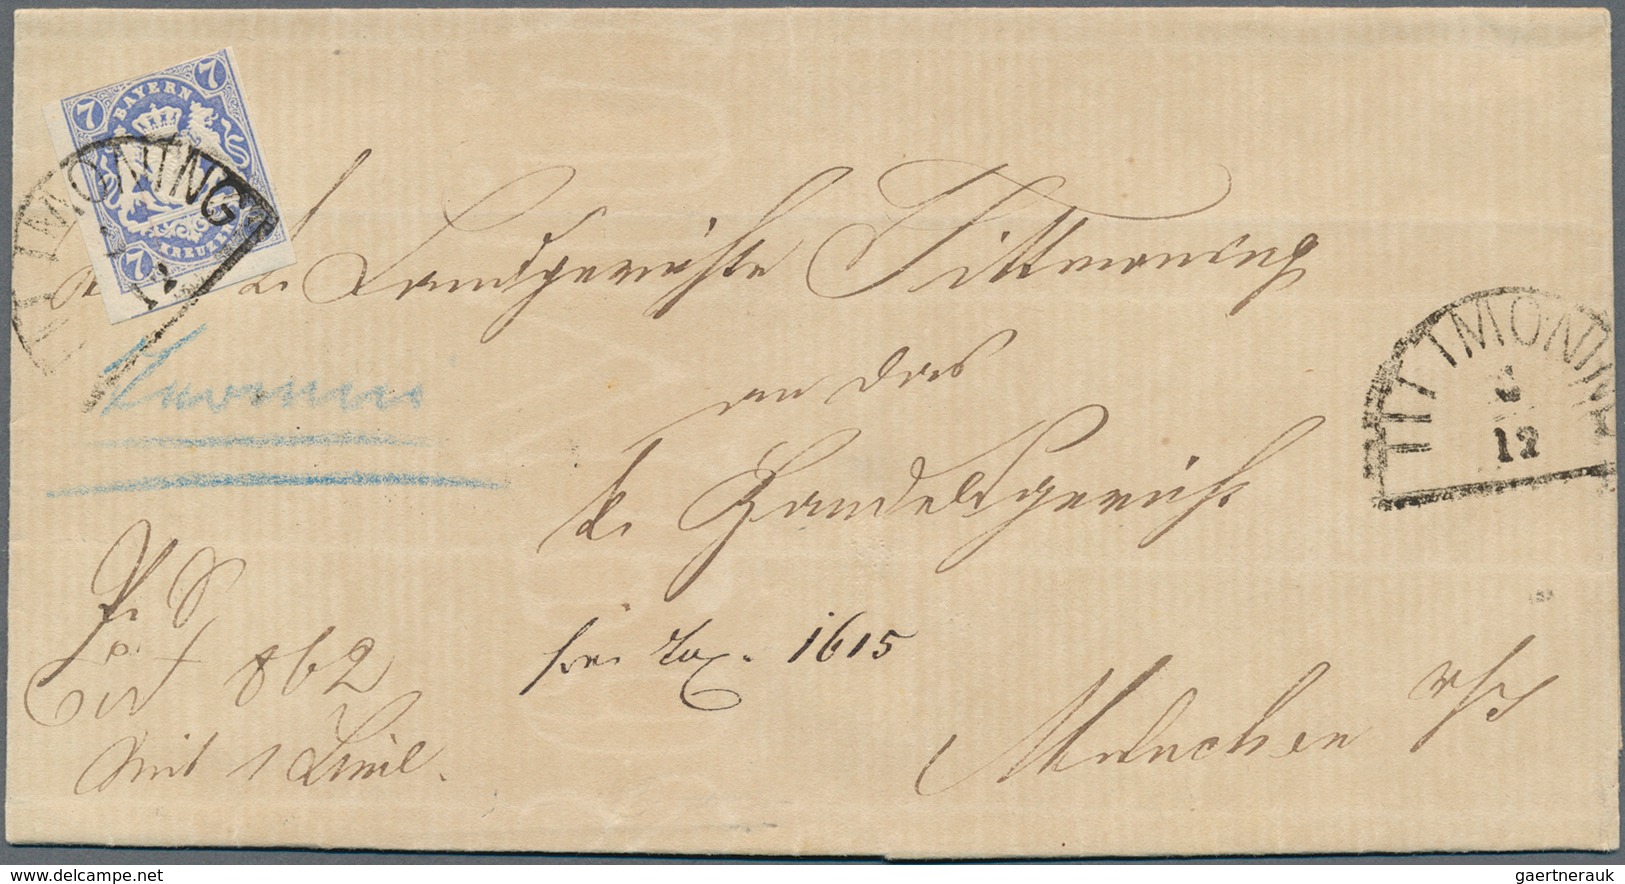 Bayern - Marken und Briefe: 1850-1870, Partie mit über 100 Briefen, Postscheinen und Belegen, zumeis